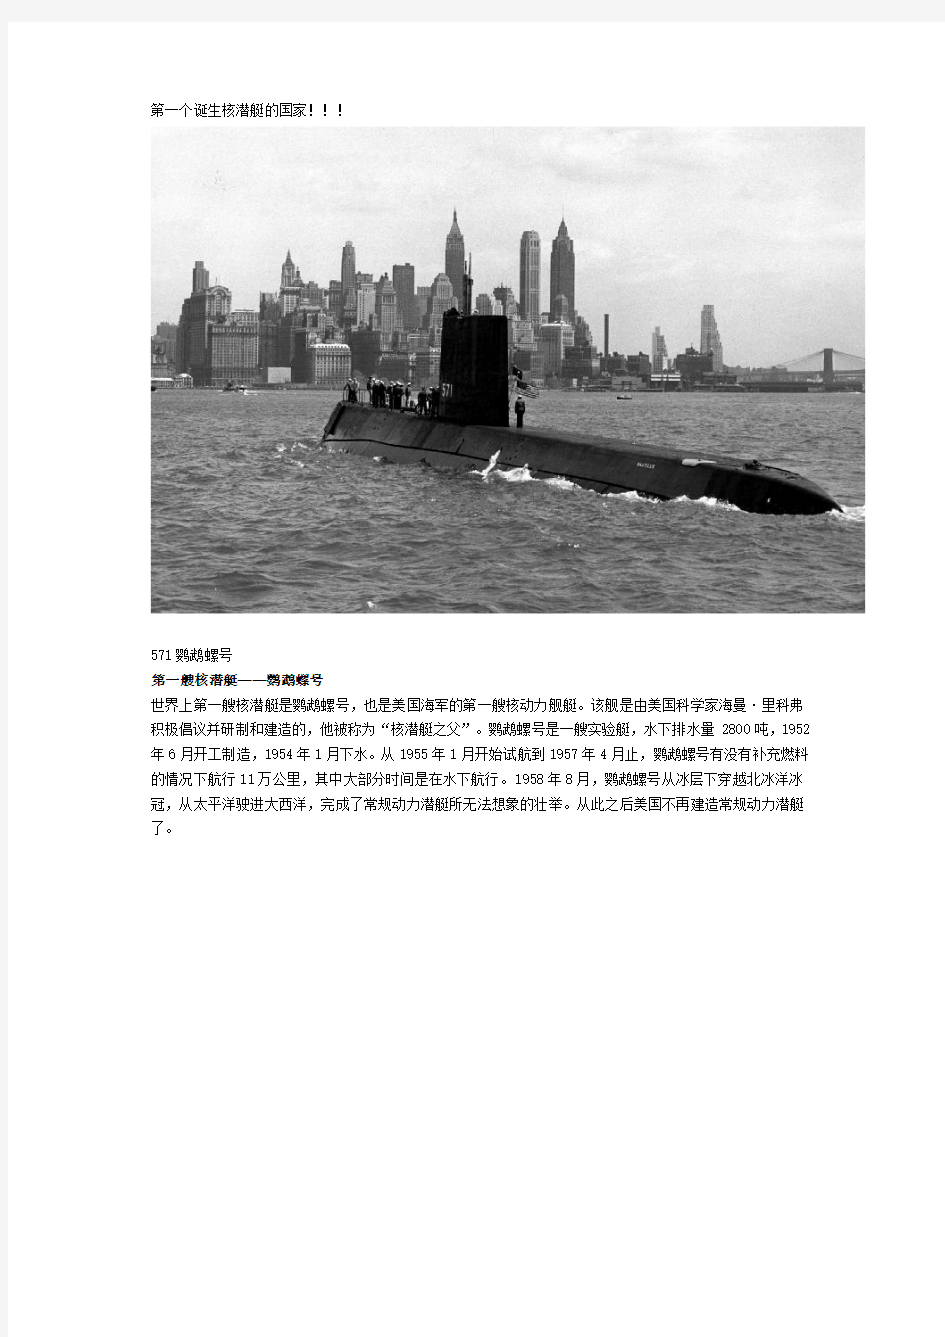 核潜艇大集合(图)--美国篇(攻击型核潜艇)分解